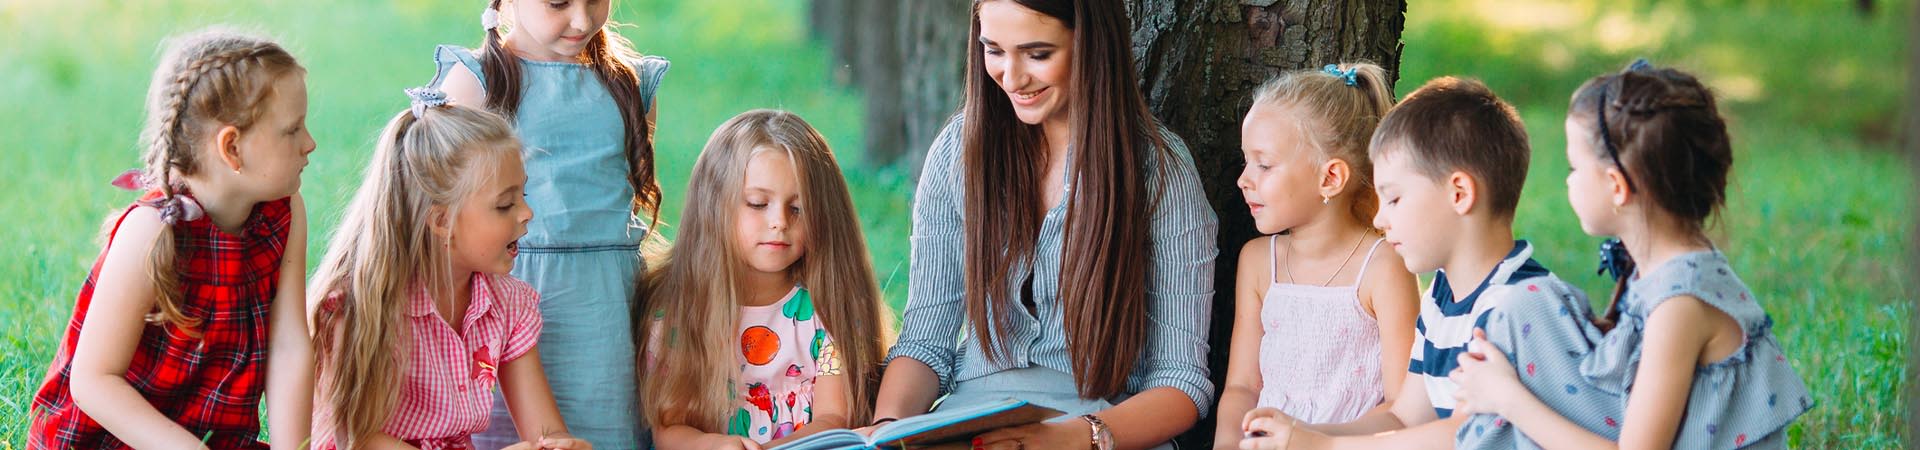 Lesen lernen: Erzieherin liest mit Kindern im Park.